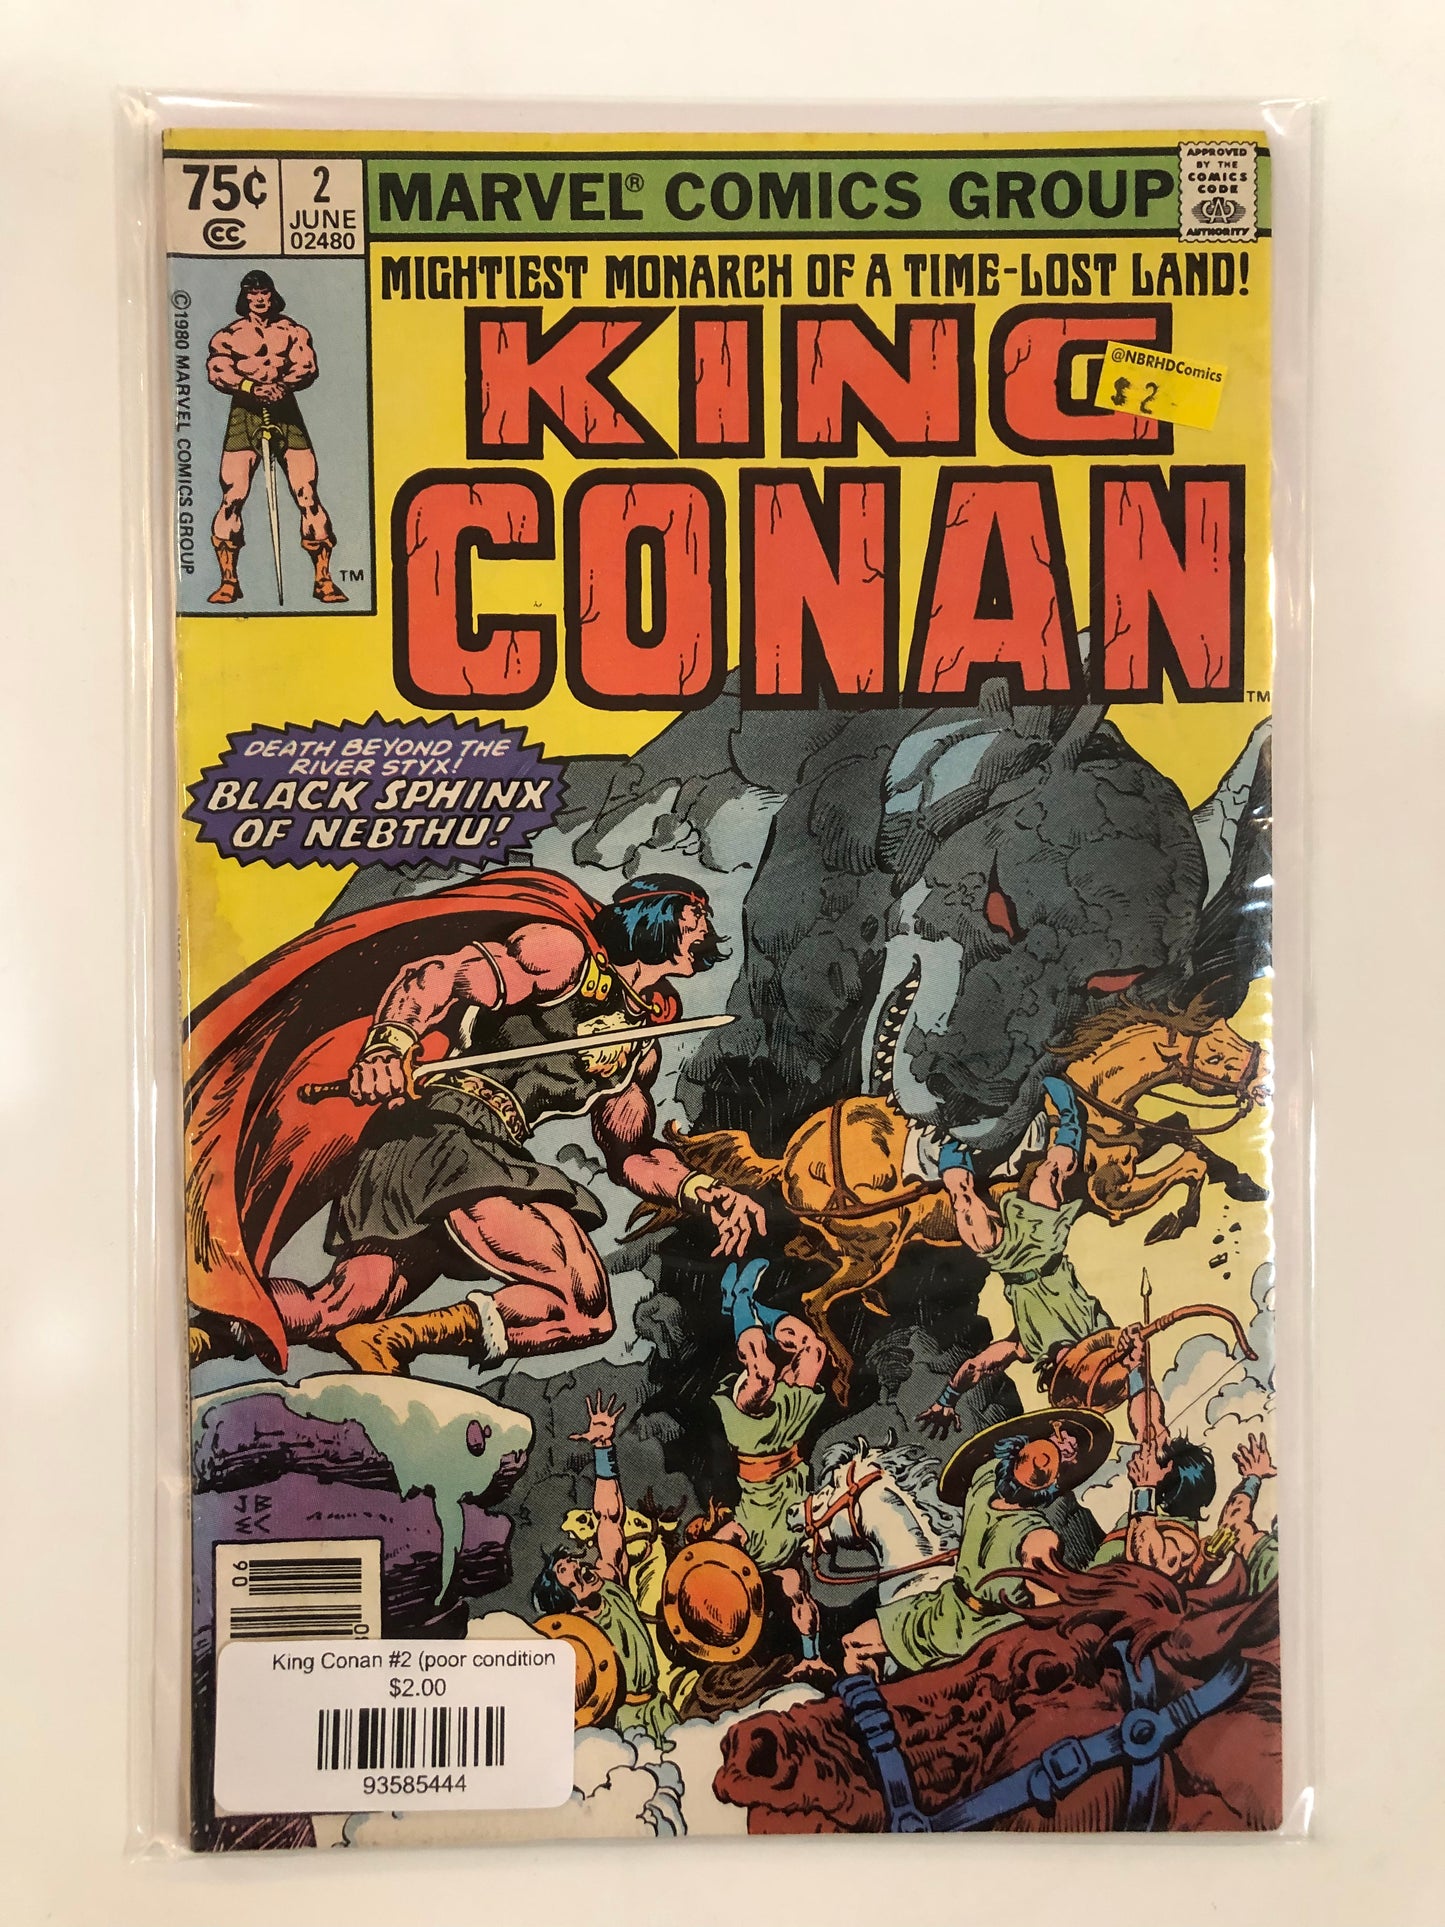 King Conan #2 (poor condition)